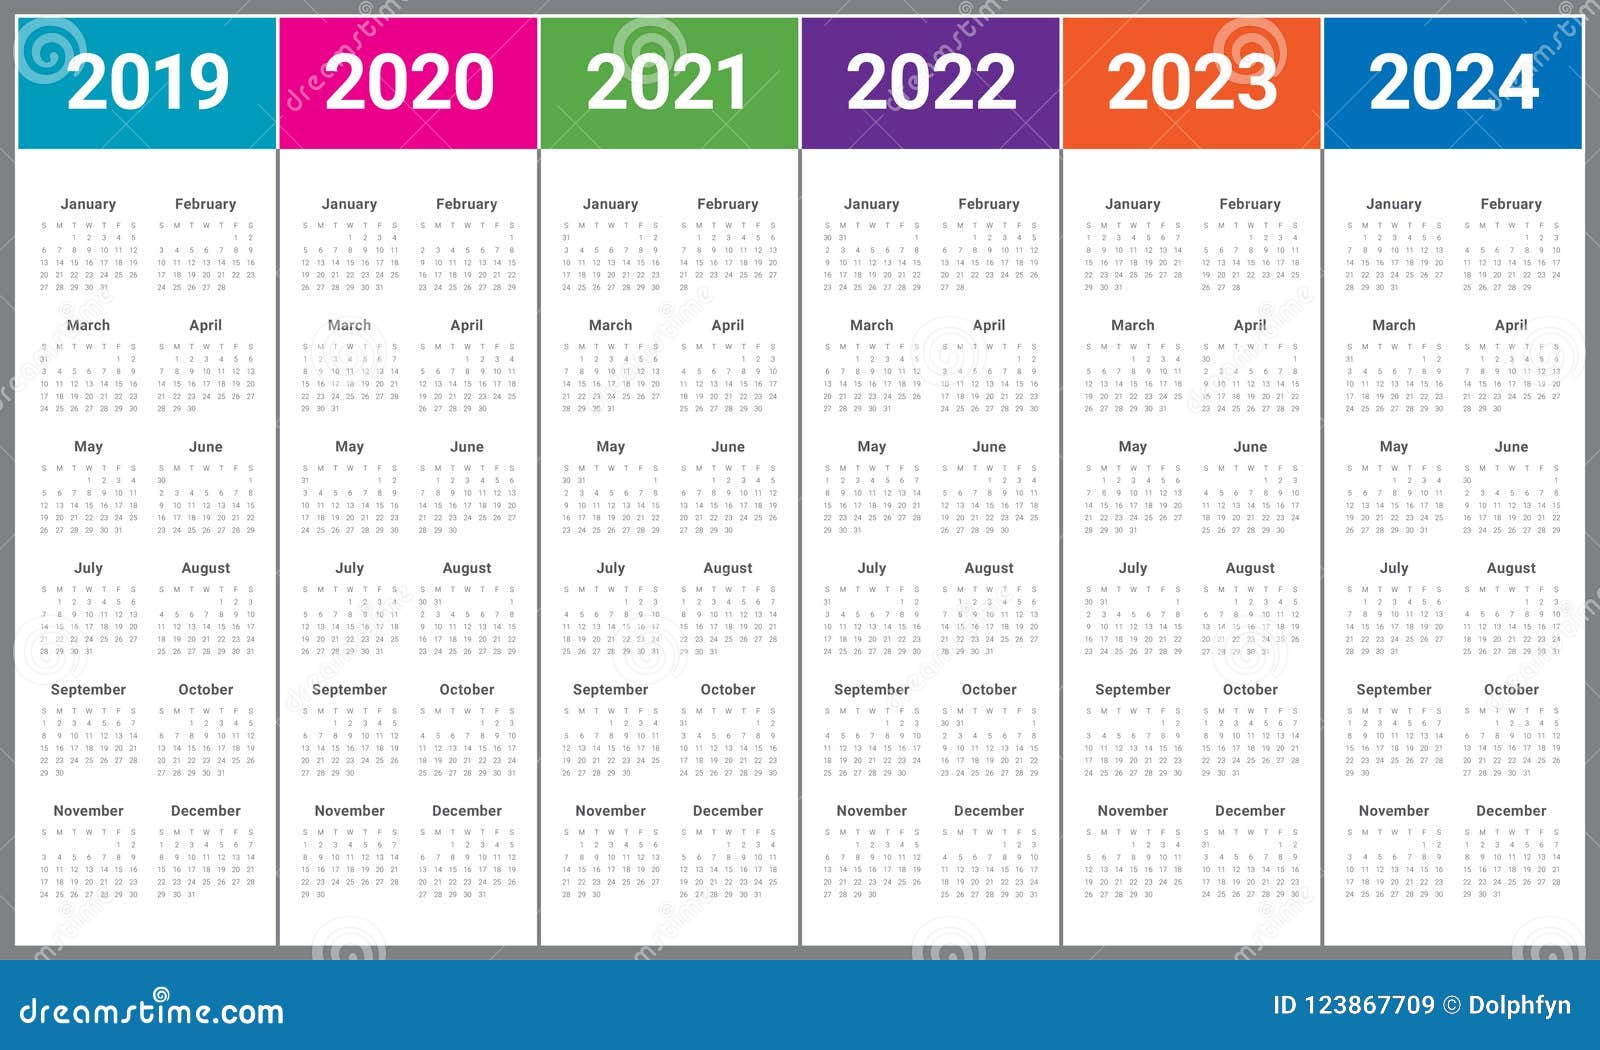 Расписание ле 2023 2024. Календарь 2022 2023 2024 2025 года. Print 2020 2021 2022 2023. Календарь 2018 2019 2020 2021 2022. Календари 2020, 2021 и 2022 годов.